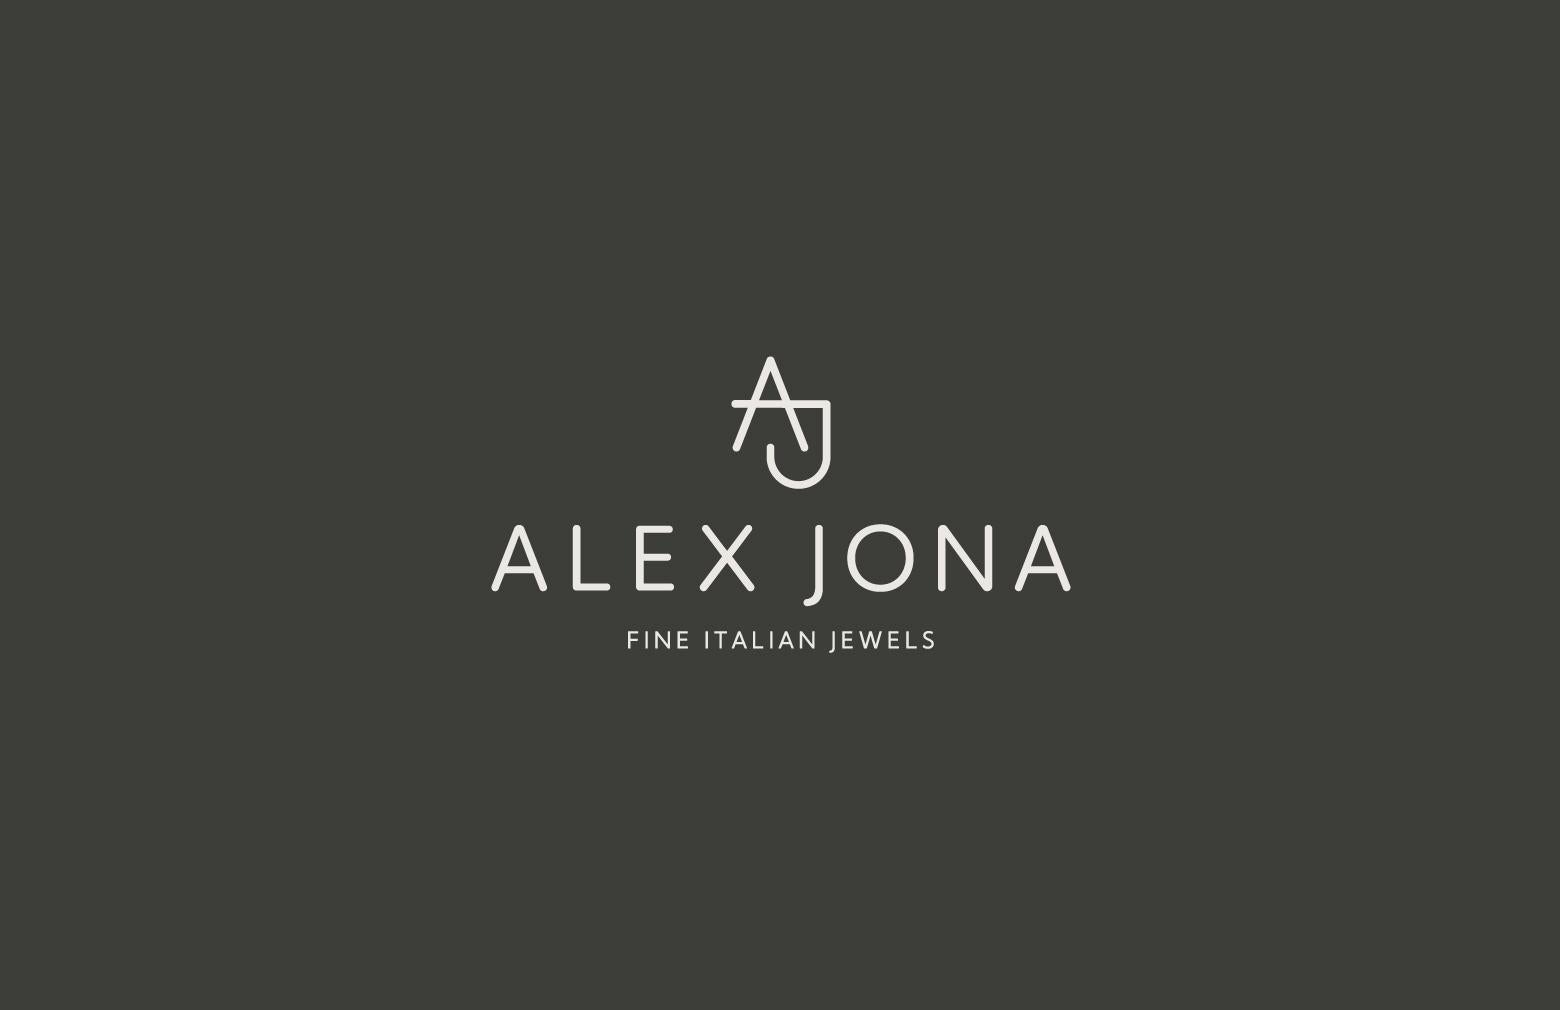 Alex Jona Aquamarine Champagne Diamond 18 Karat White Gold Ring For Sale 9